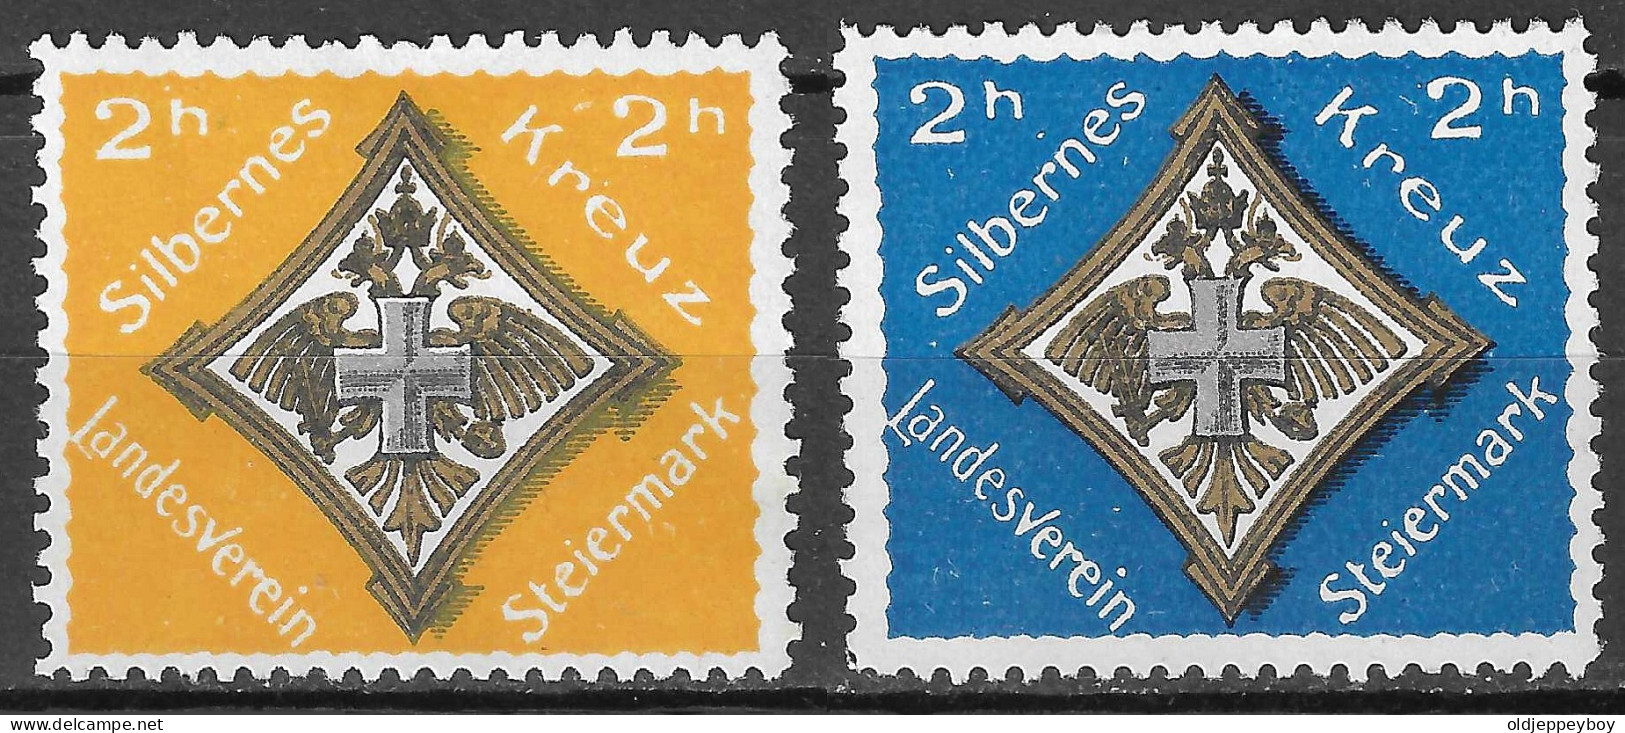 AUSTRIA Österreich Silbernes Kreuz Landesverein Steiermark Vignetten Spendemarken WW1 SET OF 2 - Militaria